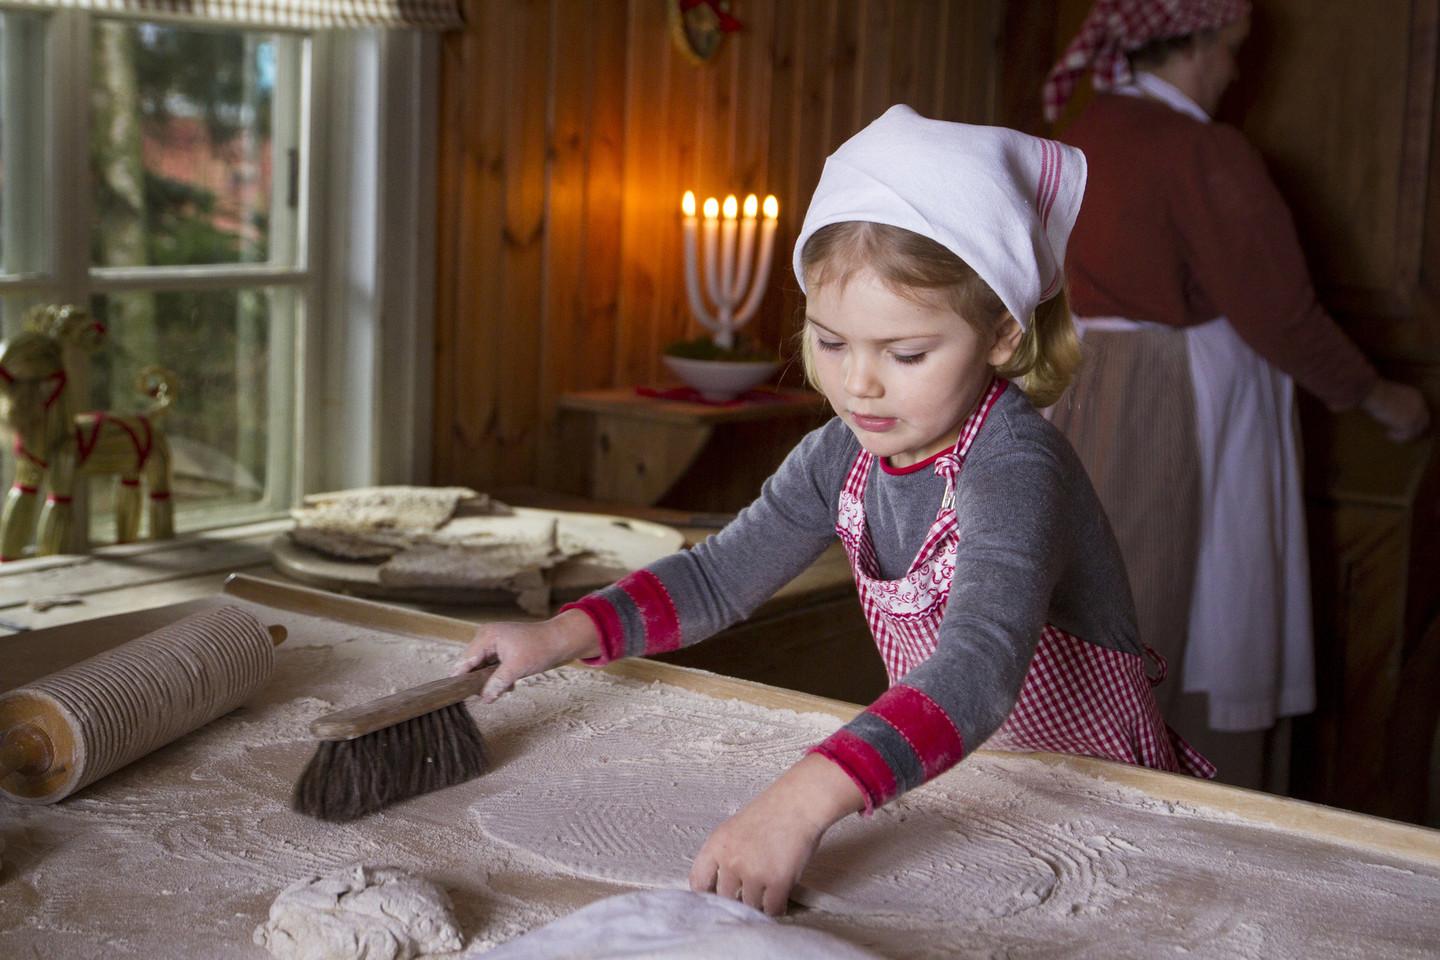 Panašu, kad mažoji princesė paveldėjo iš senelio pomėgį kulinarijai.<br>Švedijos karališkųjų rūmų nuotr.